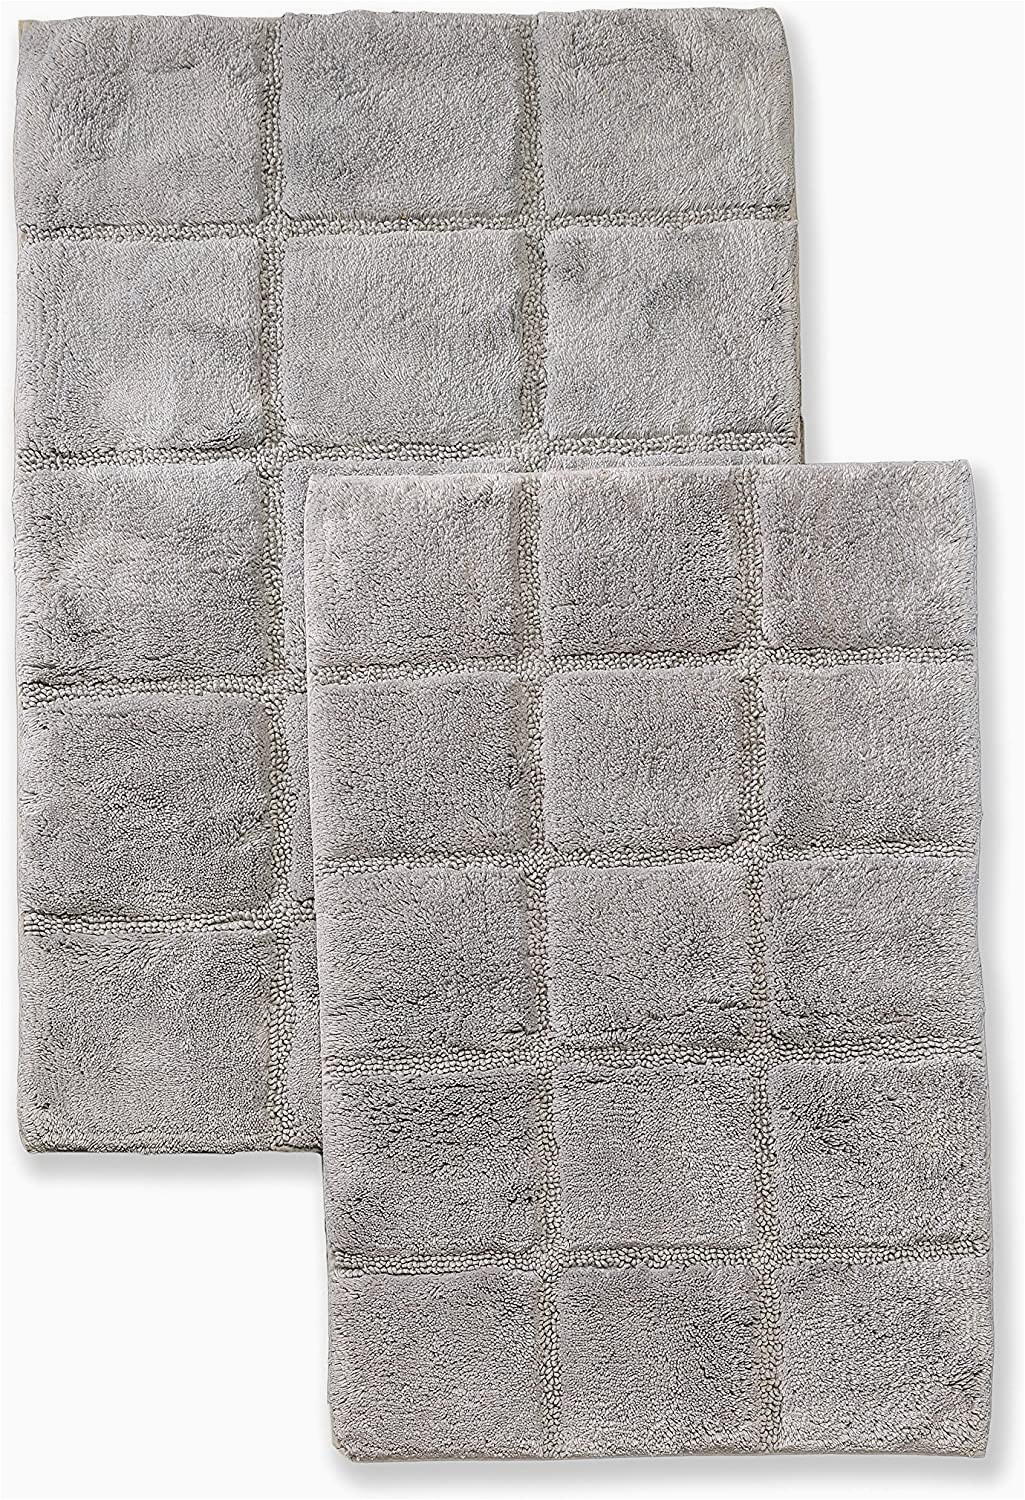 Silver Gray Bathroom Rugs Superior 2 Piece Cotton Checkered Non Skid Bath Rug Set